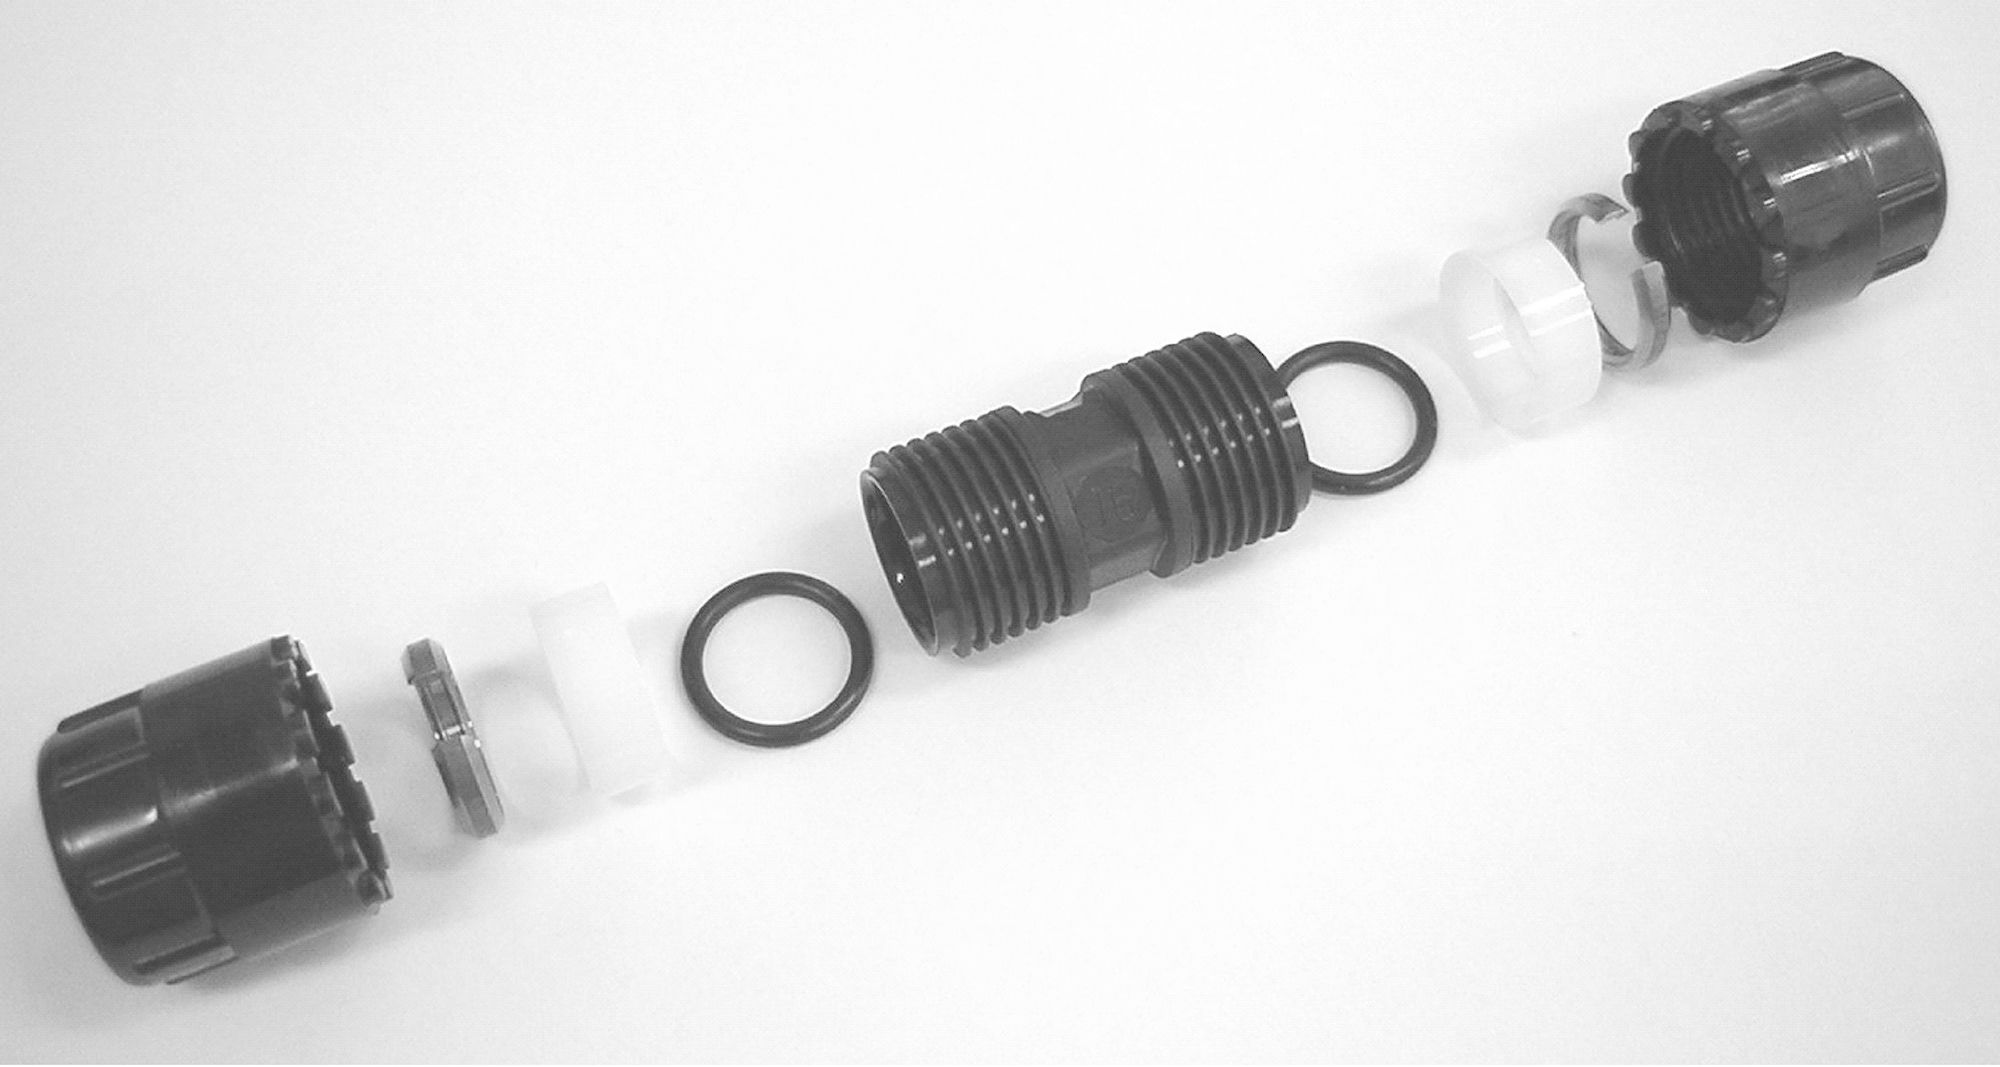 Simplast rechte koppeling 25 mm, zwart